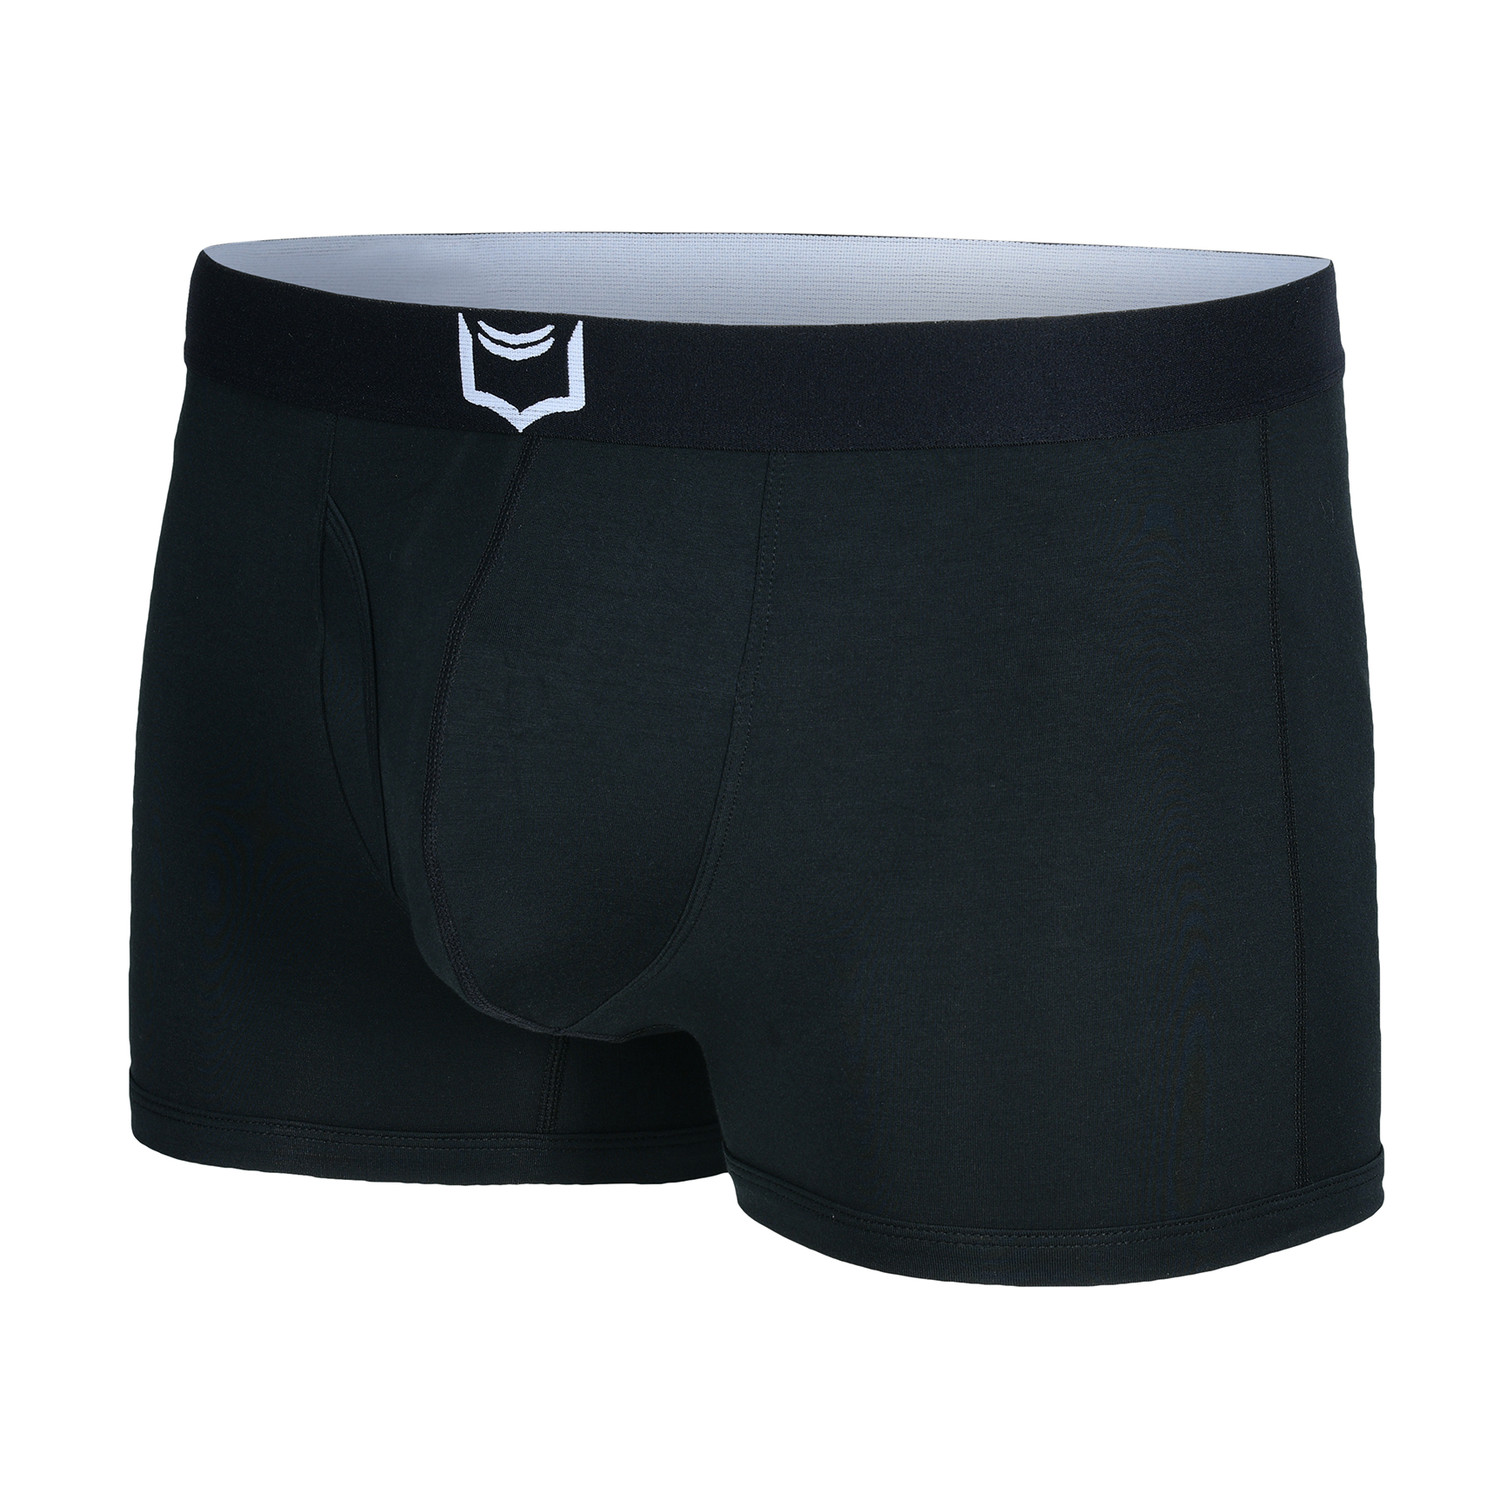 Sheath 2.1 Dual Pouch Trunks // Black (2XL) - Sheath Underwear - Touch ...